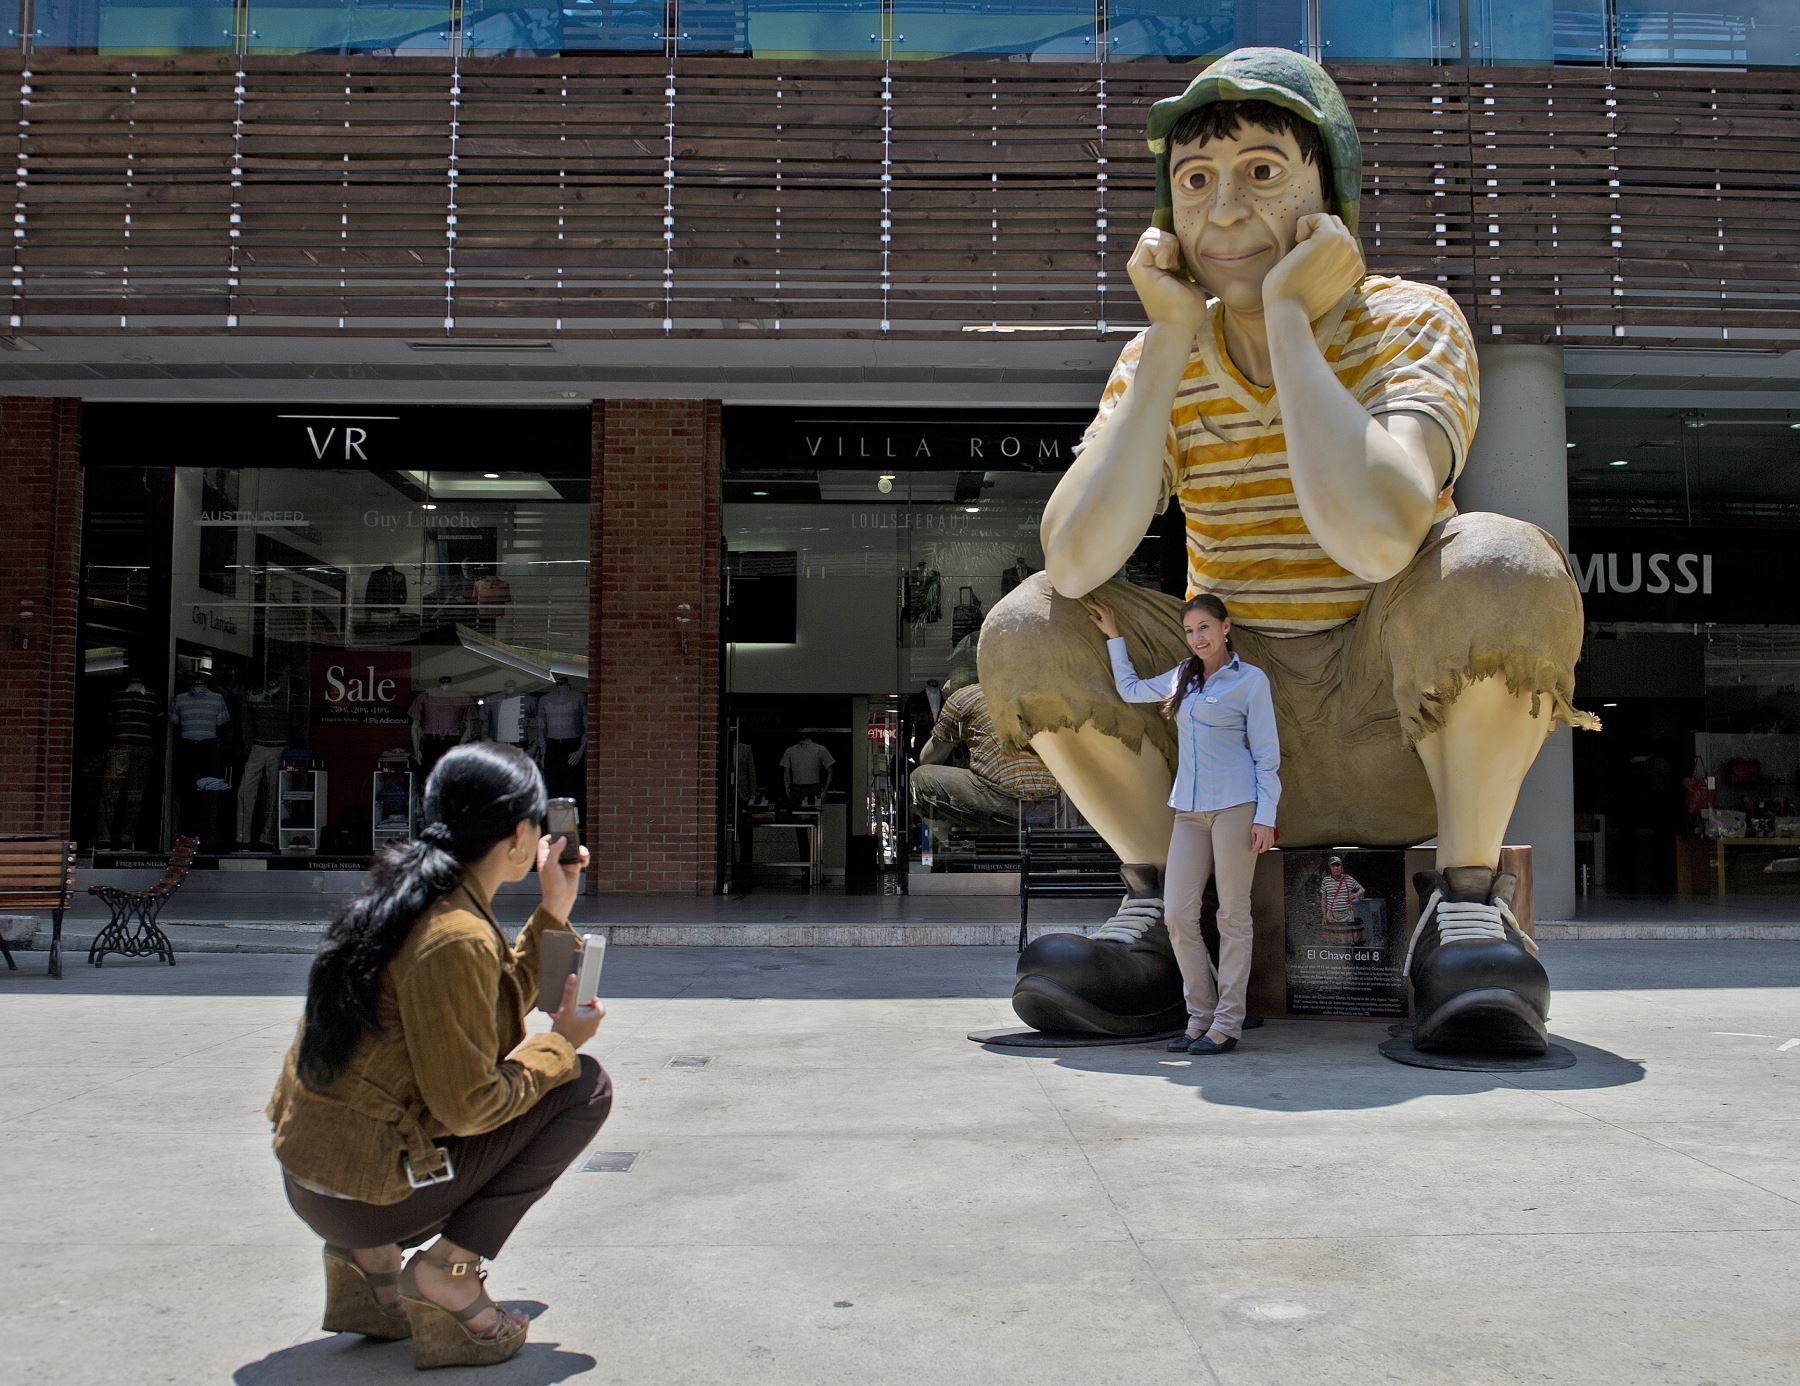 Una mujer toma una fotografía de la escultura del famoso personaje de la televisión latinoamericana "El Chavo del Ocho" exhibida en el Mall Chipichape, Colombia. Foto: AFP